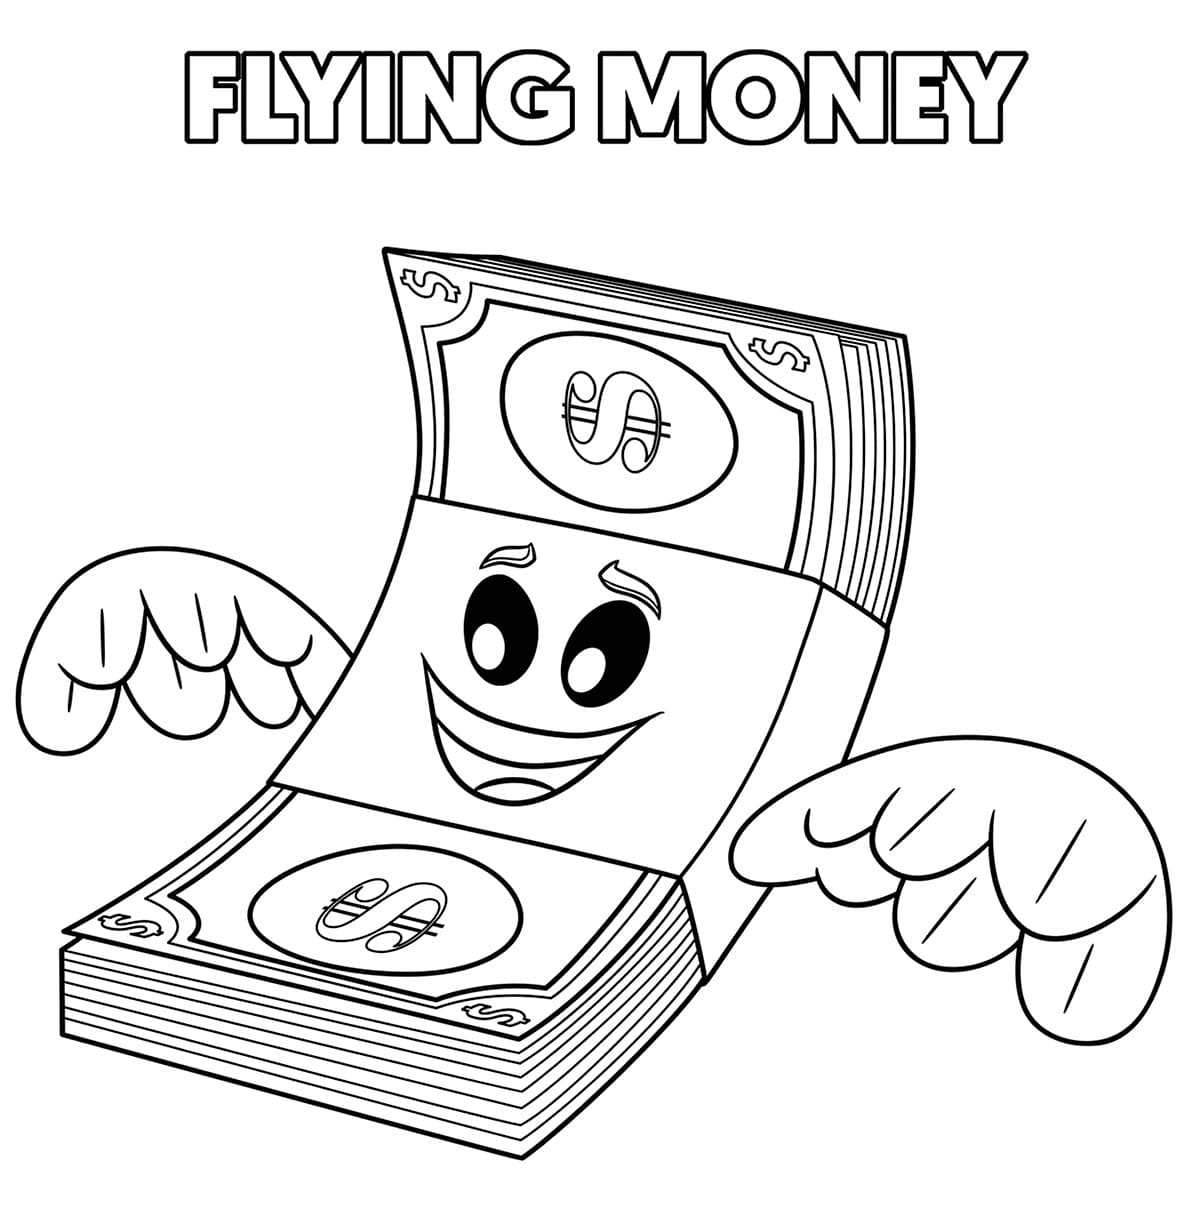 Flying Money from The Emoji Movie